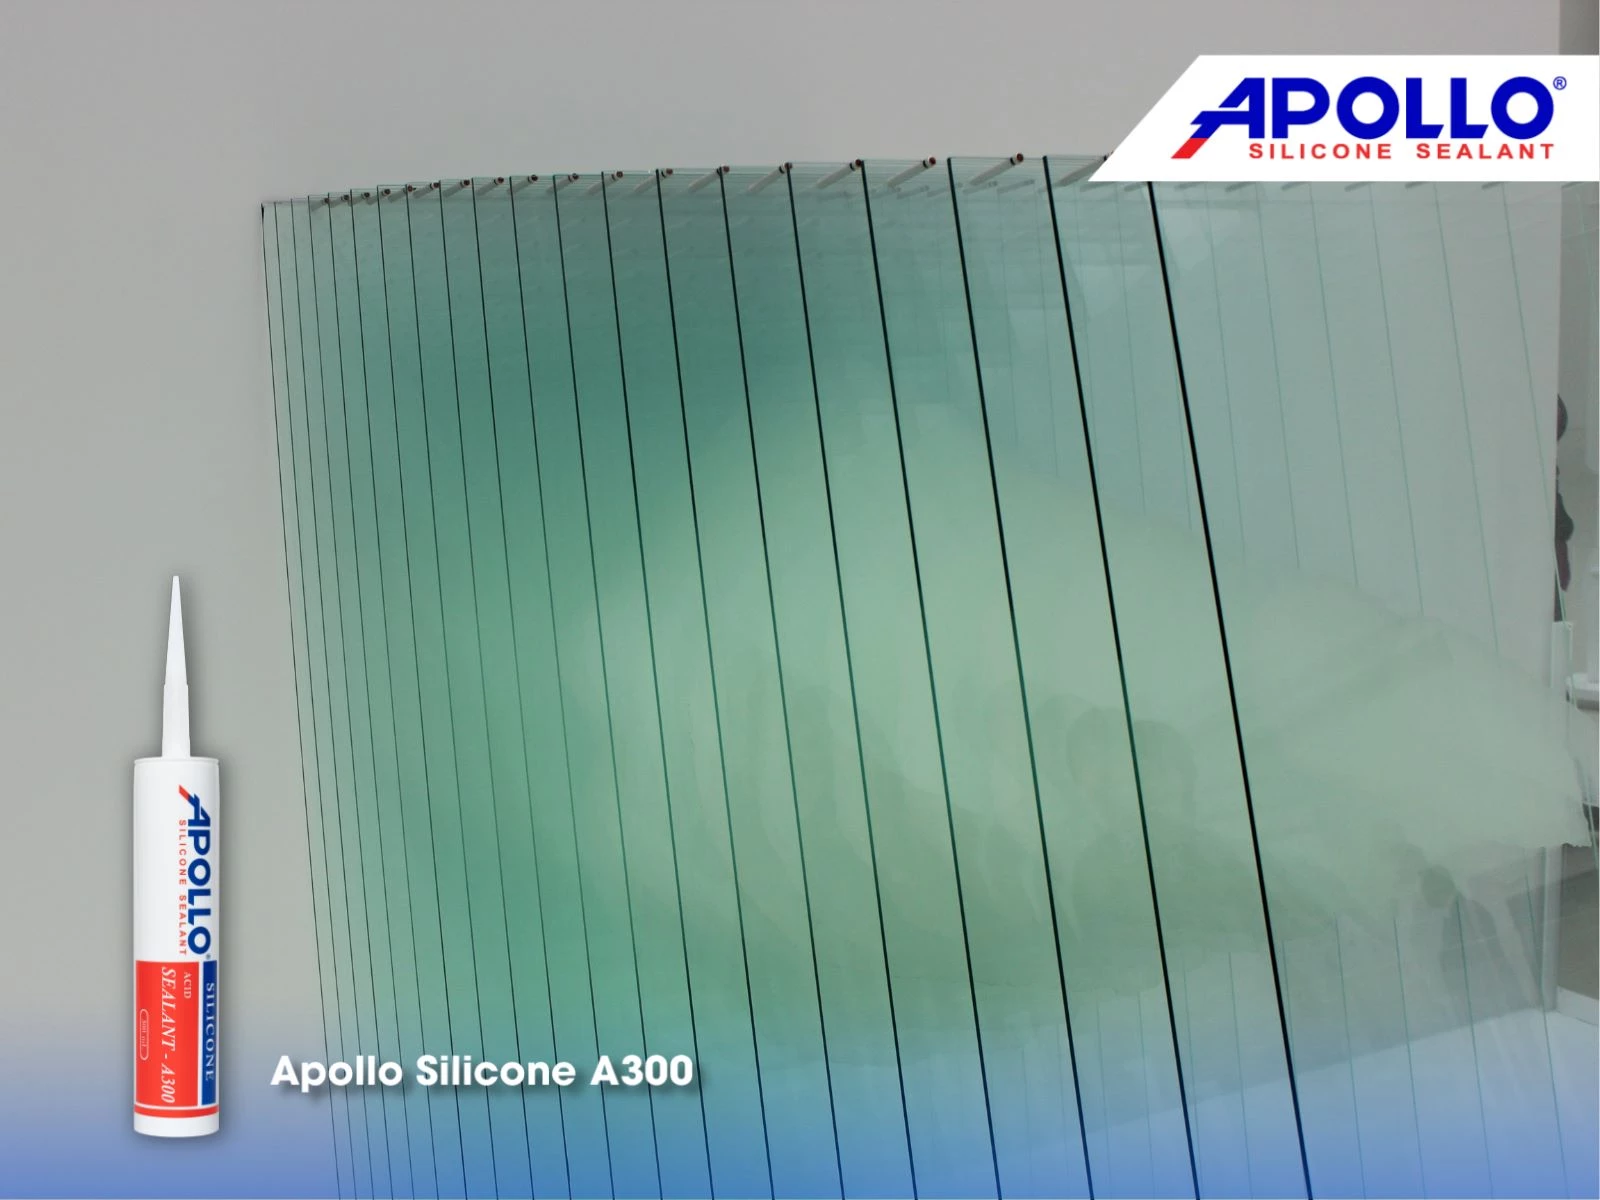 Apollo Silicone A300 - Chất keo chuyên dùng trám bề mặt vật liệu kính